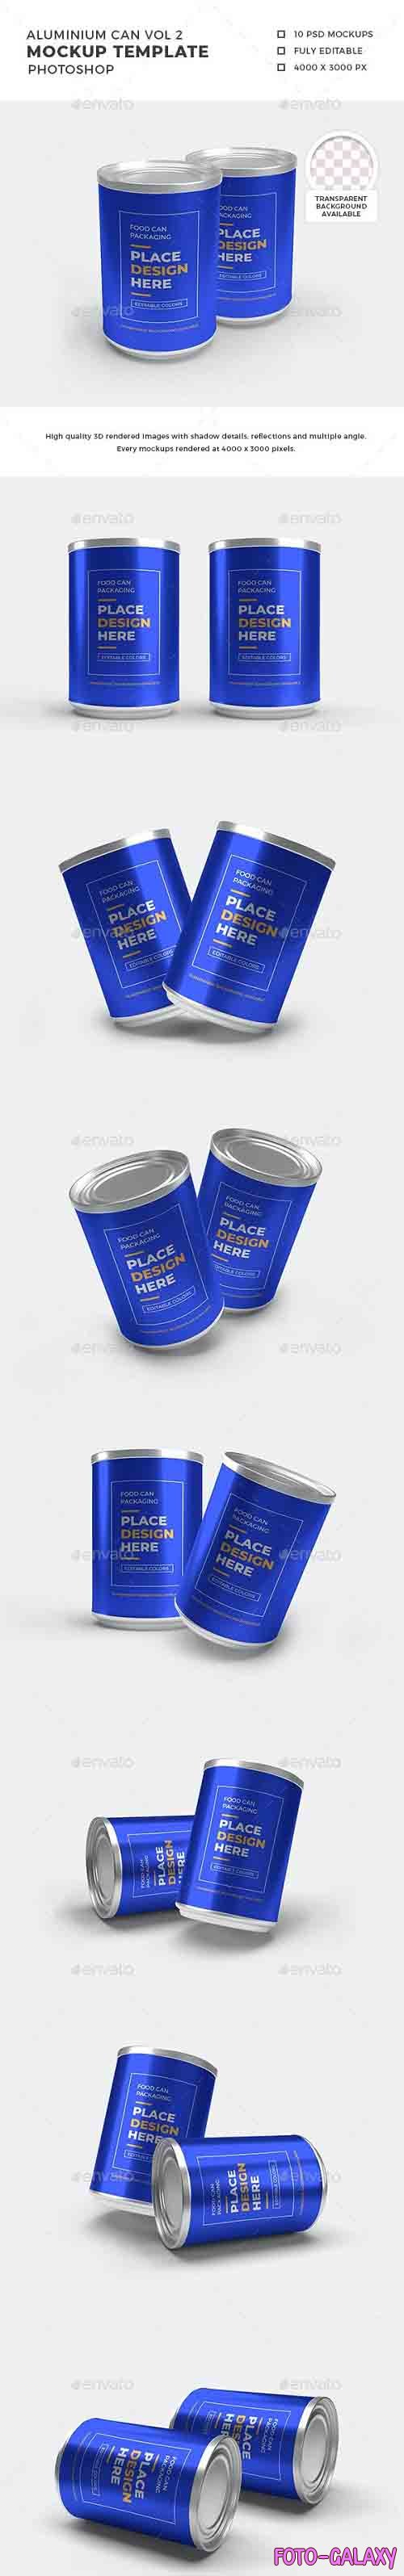 Aluminium Food Can Mockup Set - 32368774 - 1392677 - 3D Template